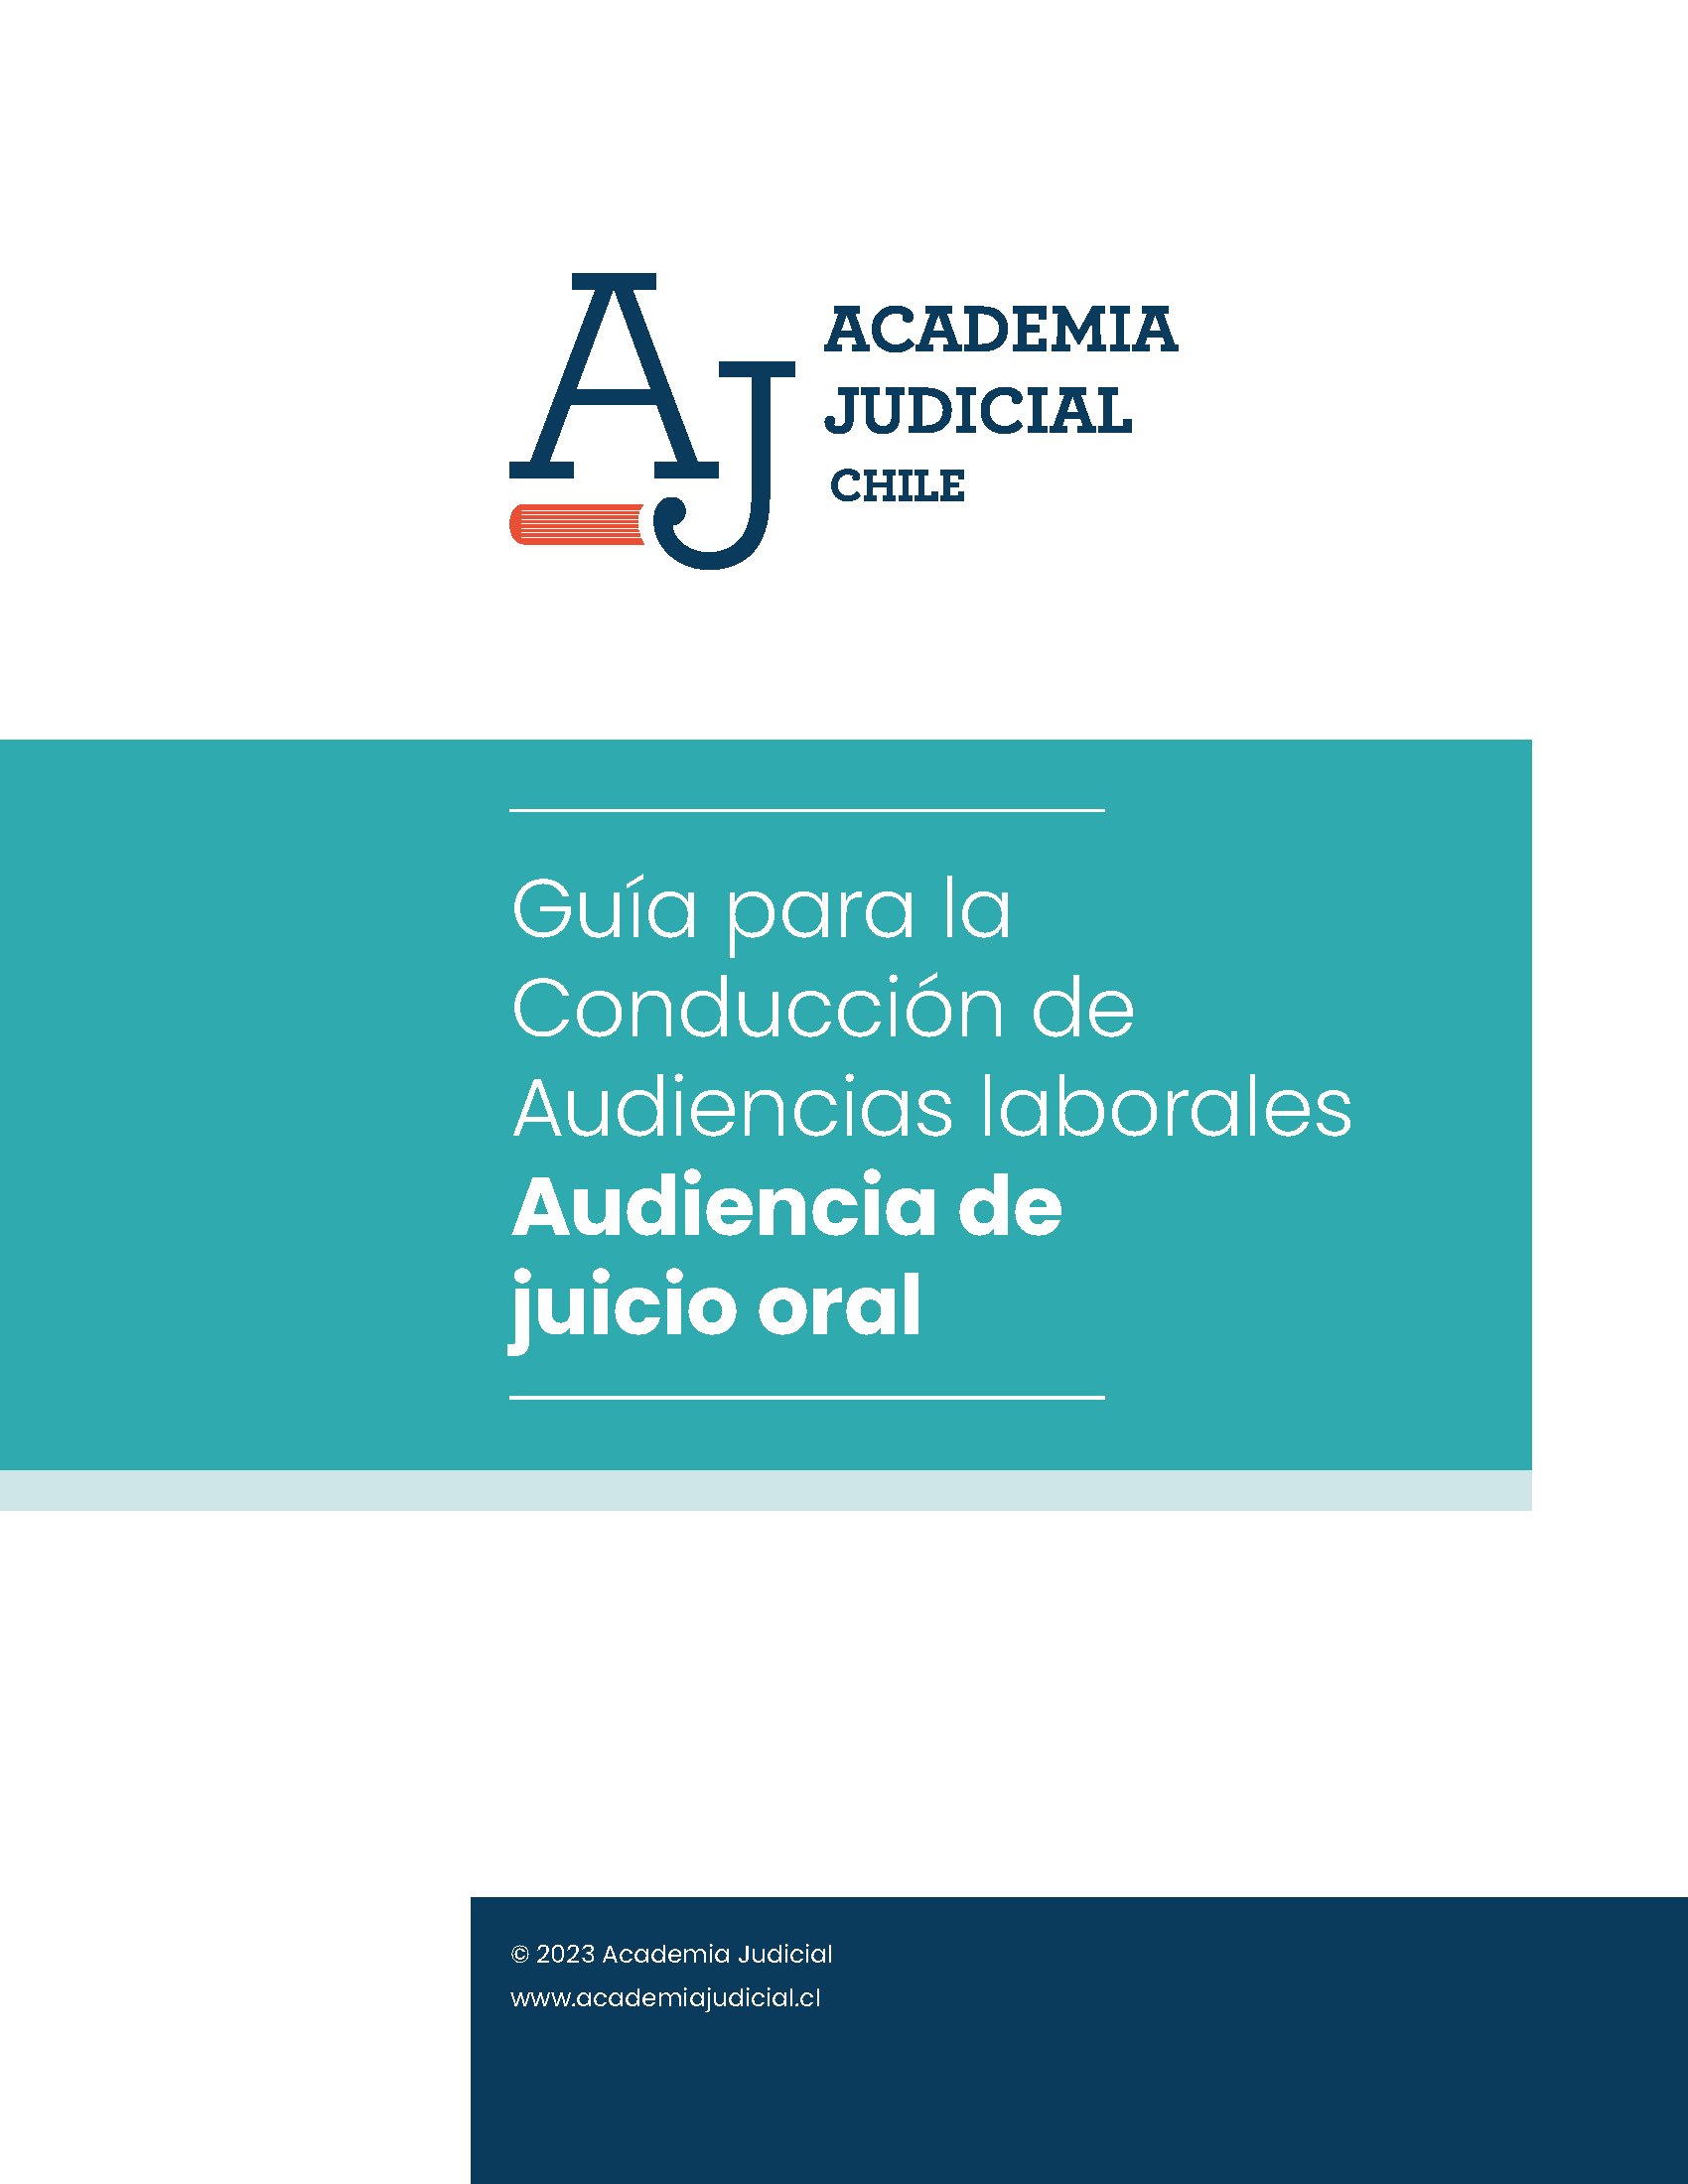 Guía para la Conducción de la Audiencia de Juicio Oral Laboral